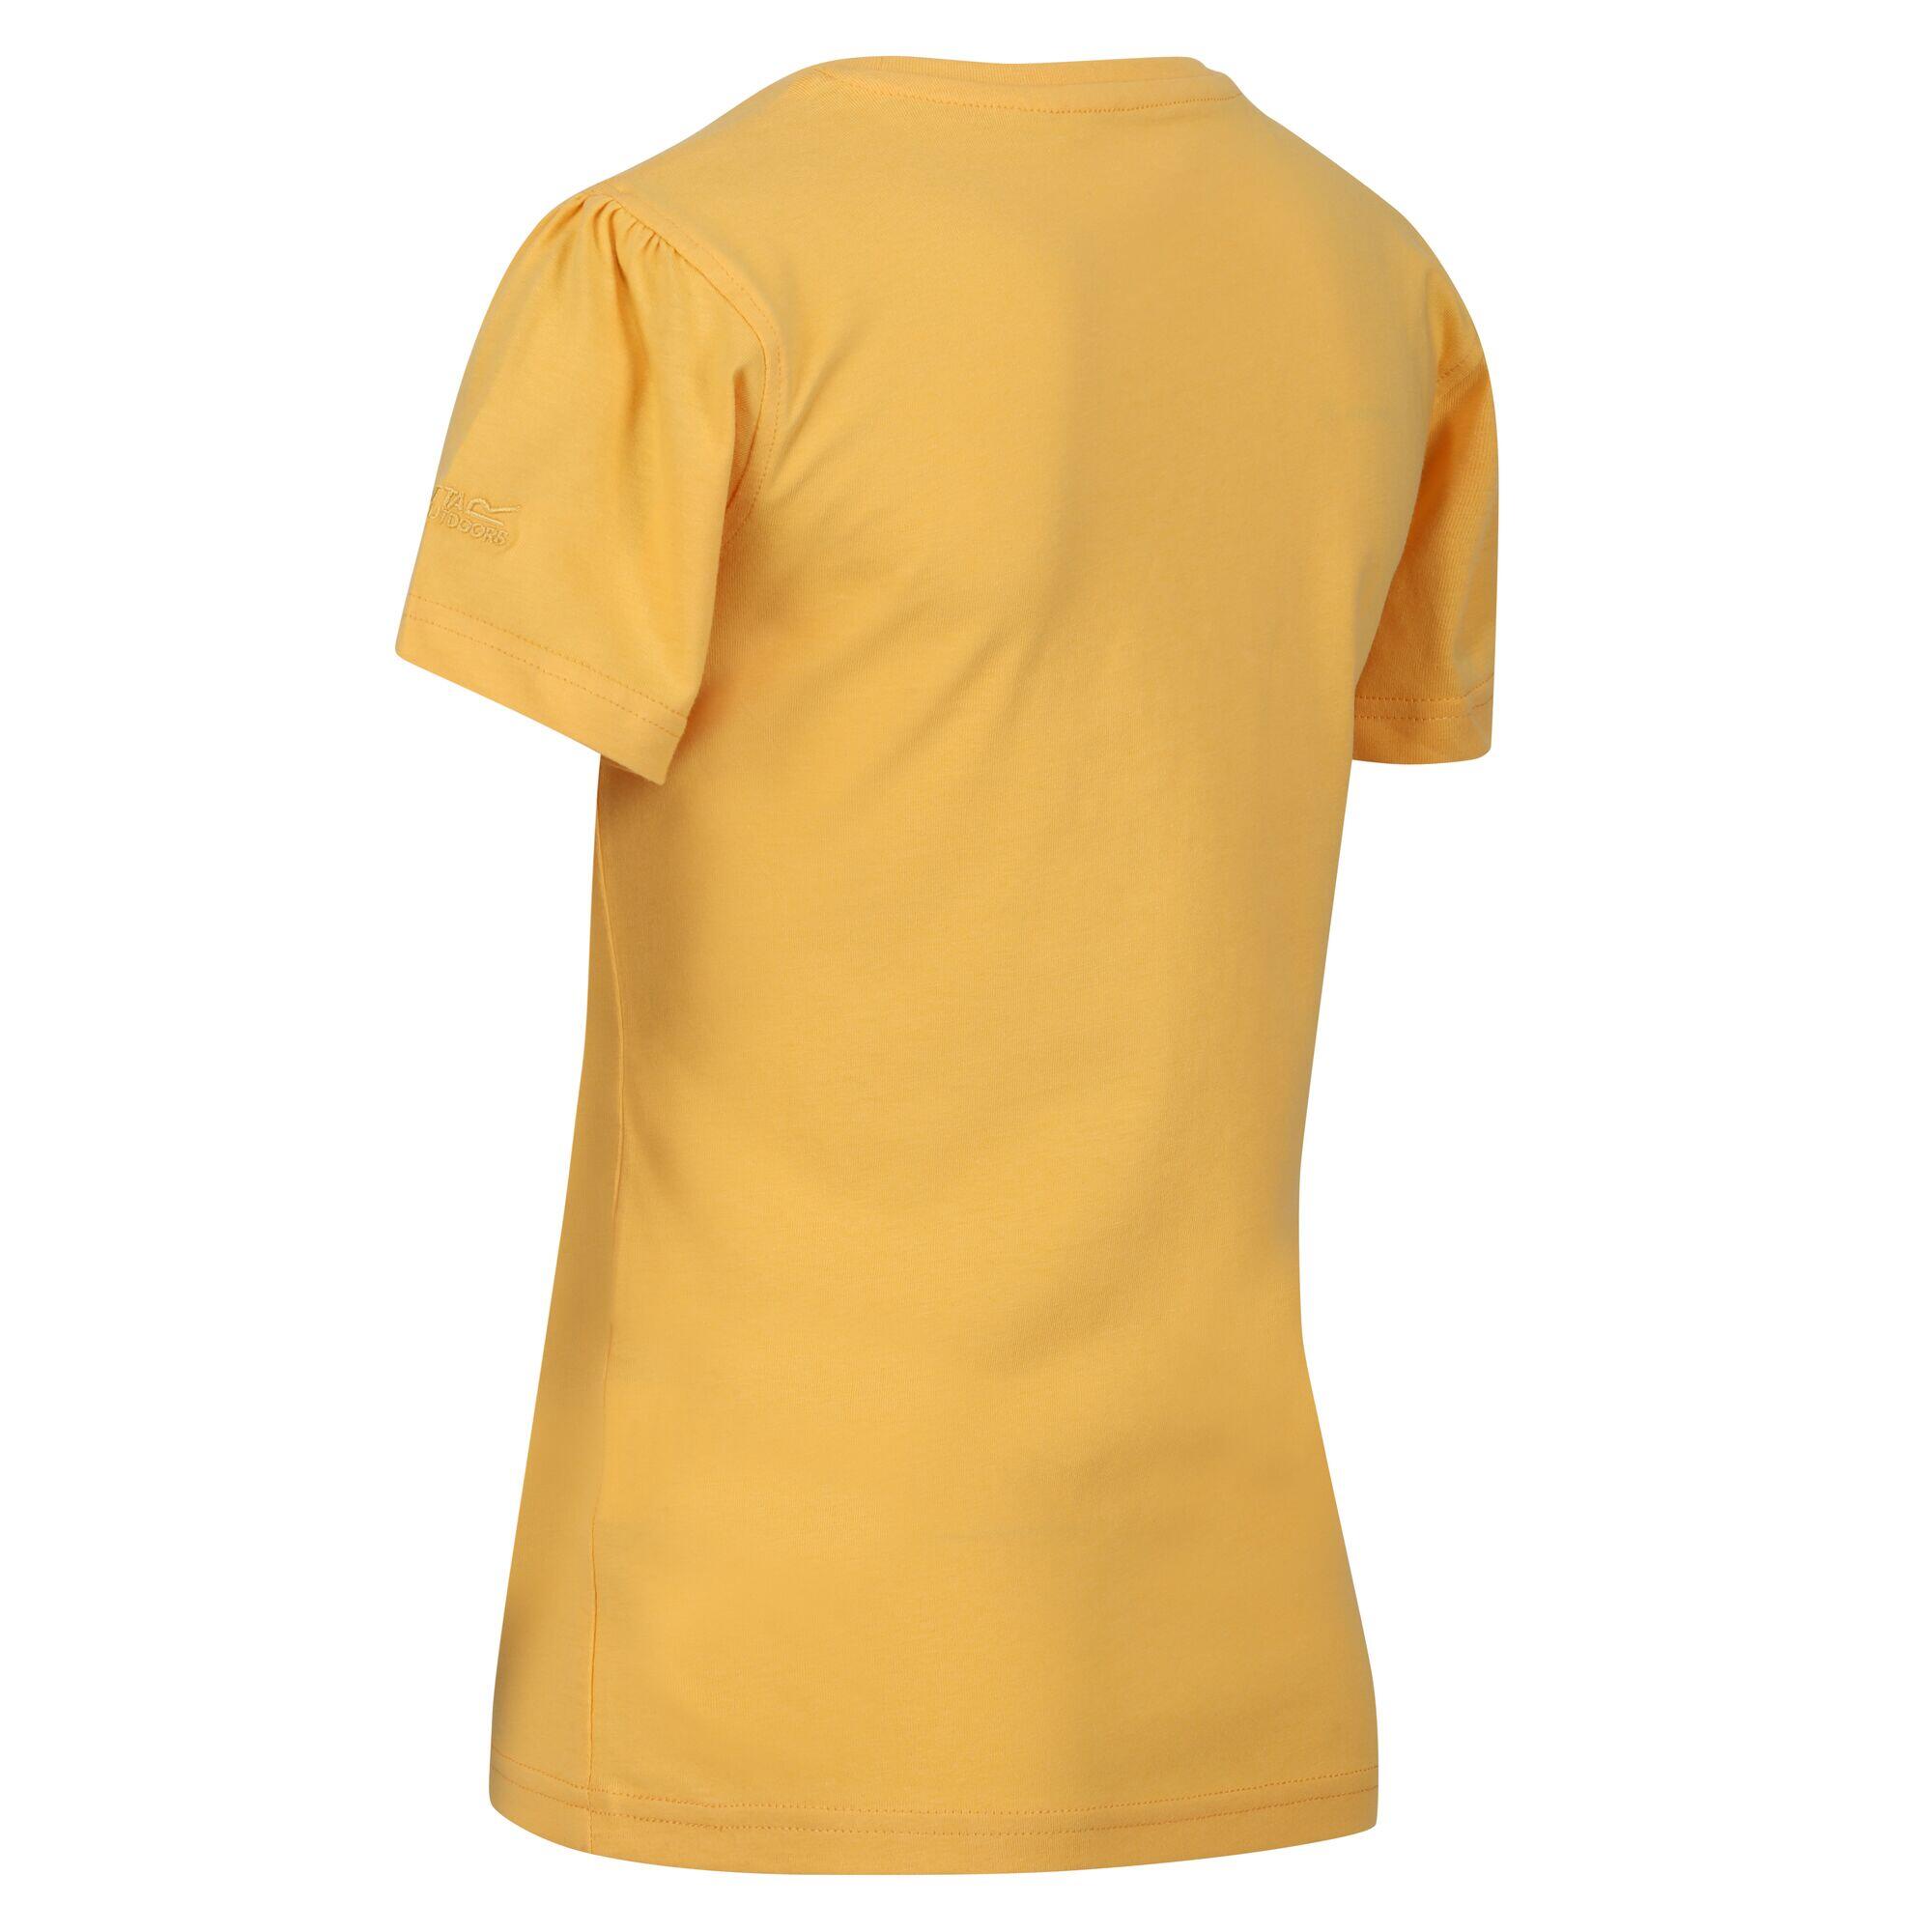 Childrens/Kids Bosley VI Sunset TShirt (Amber Yellow) 4/5